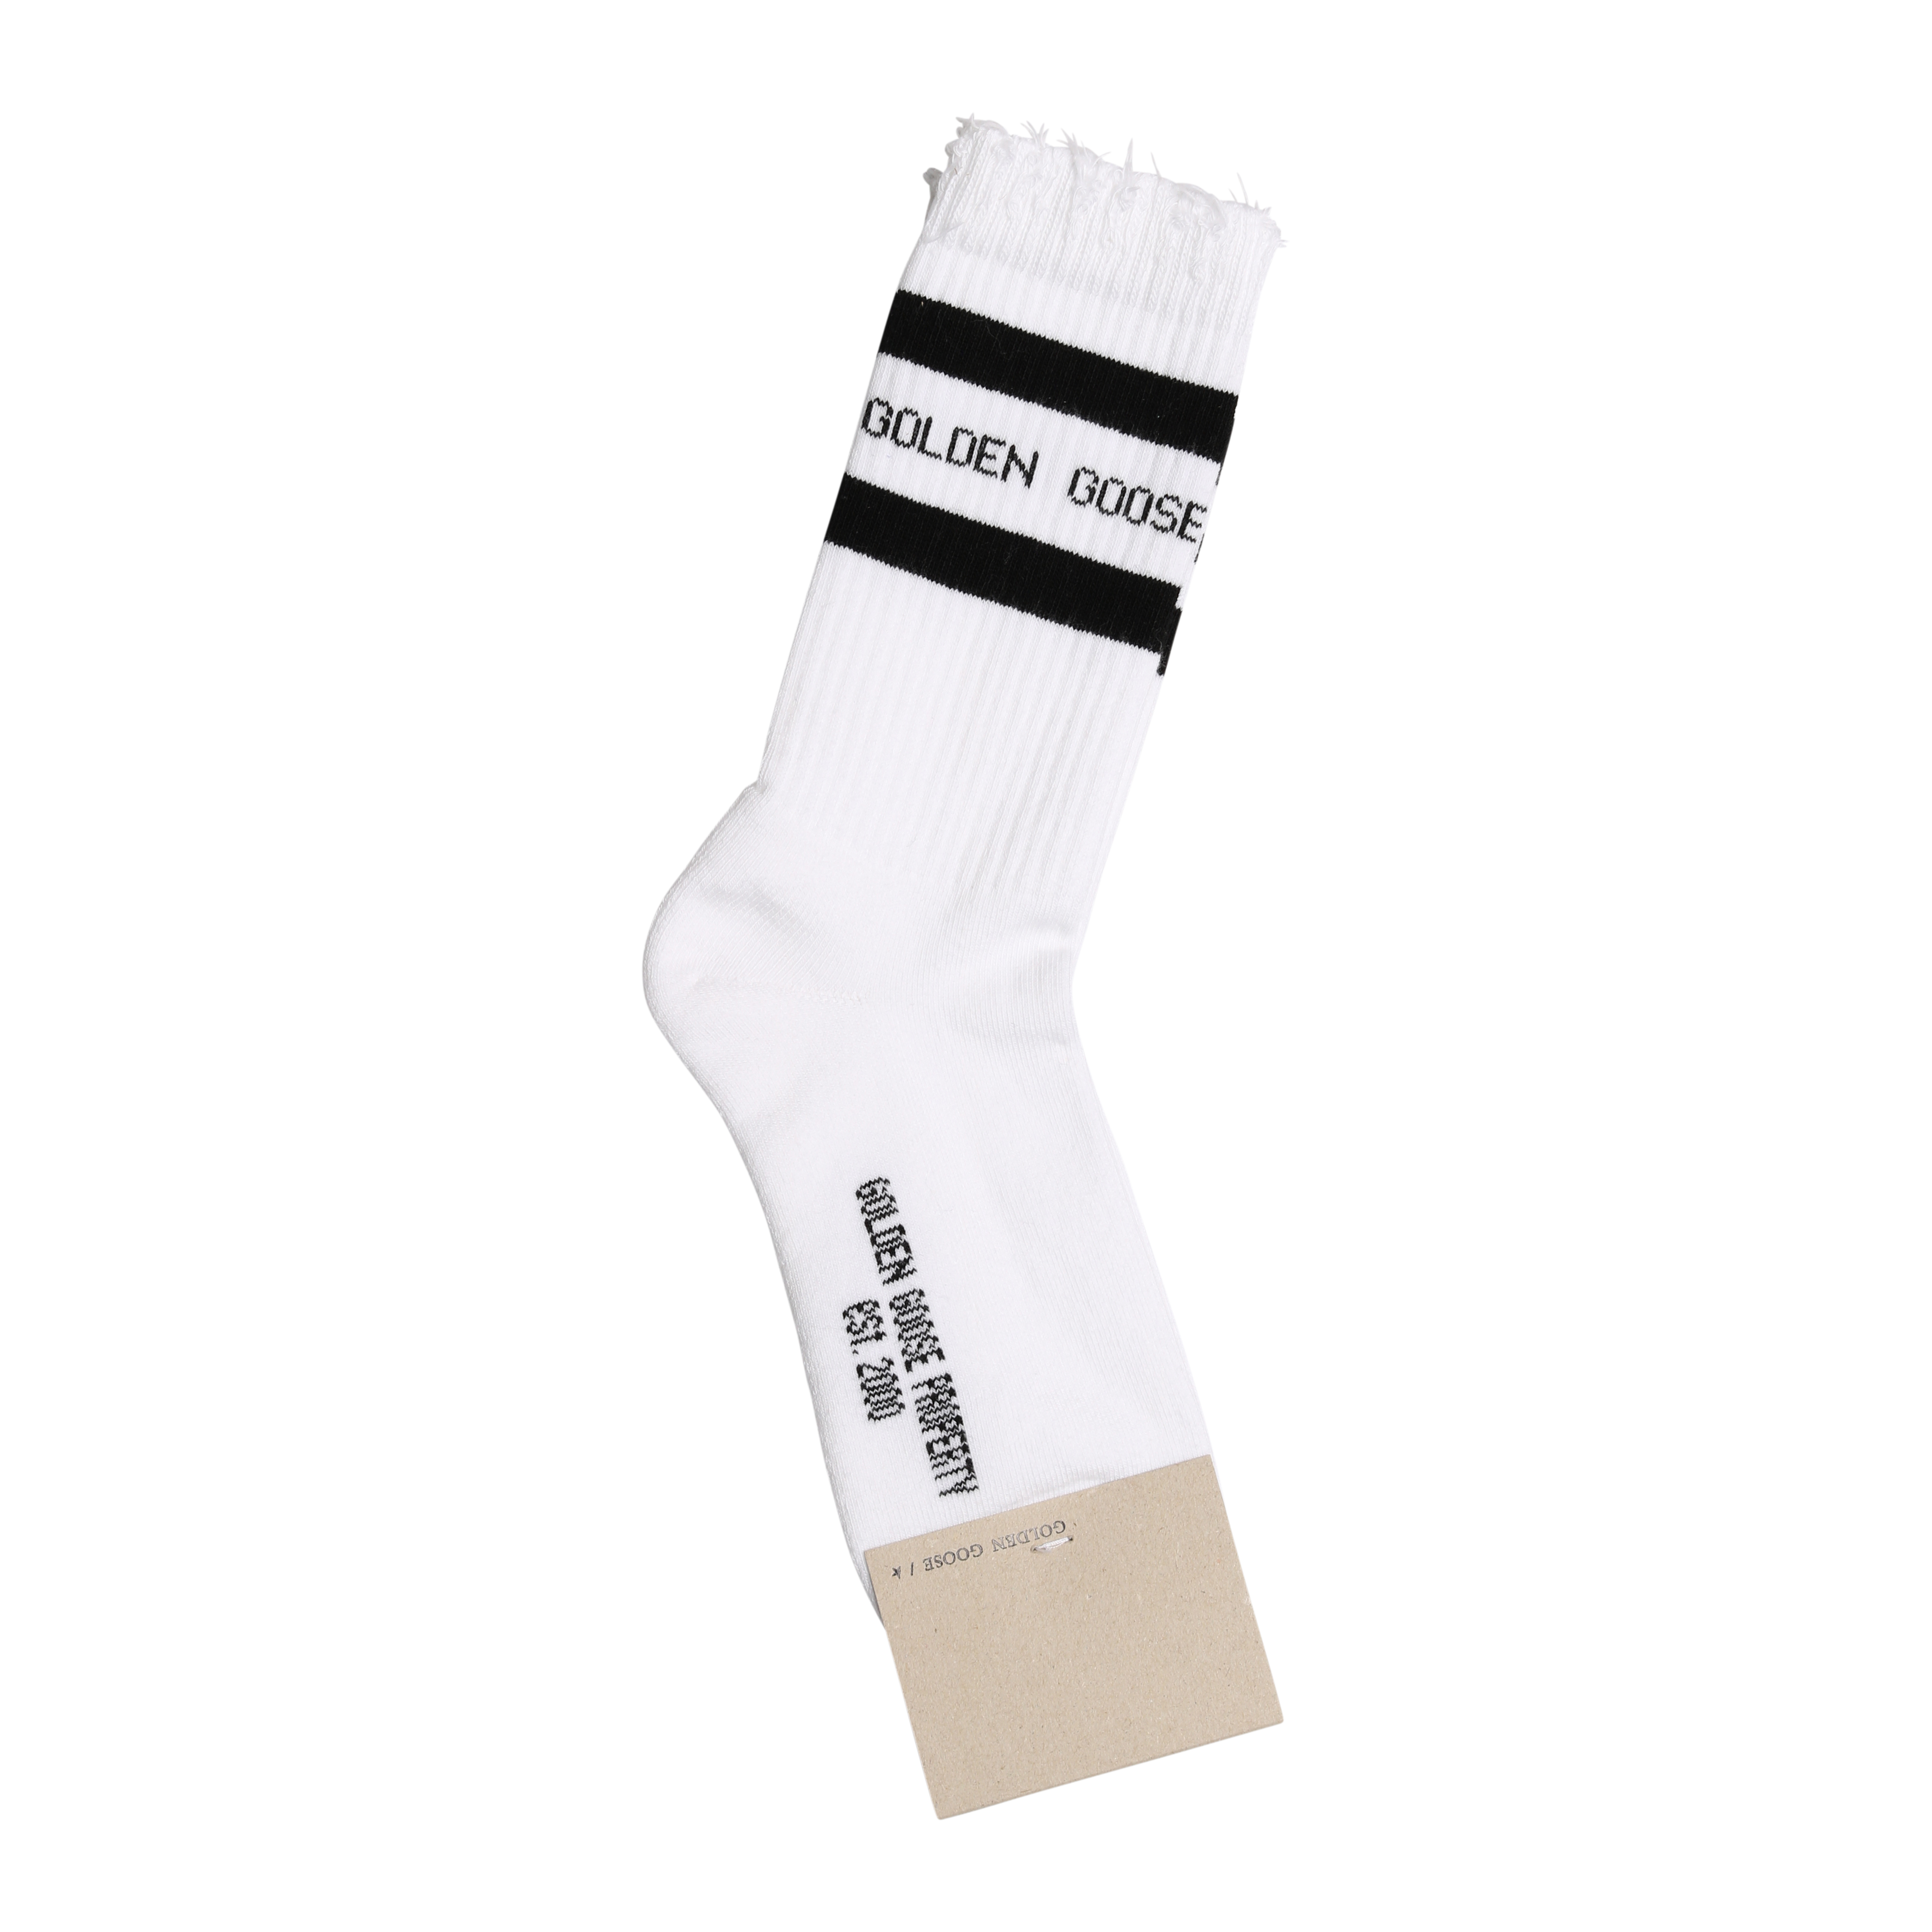 Golden Goose Socks High Rib in White/Black S